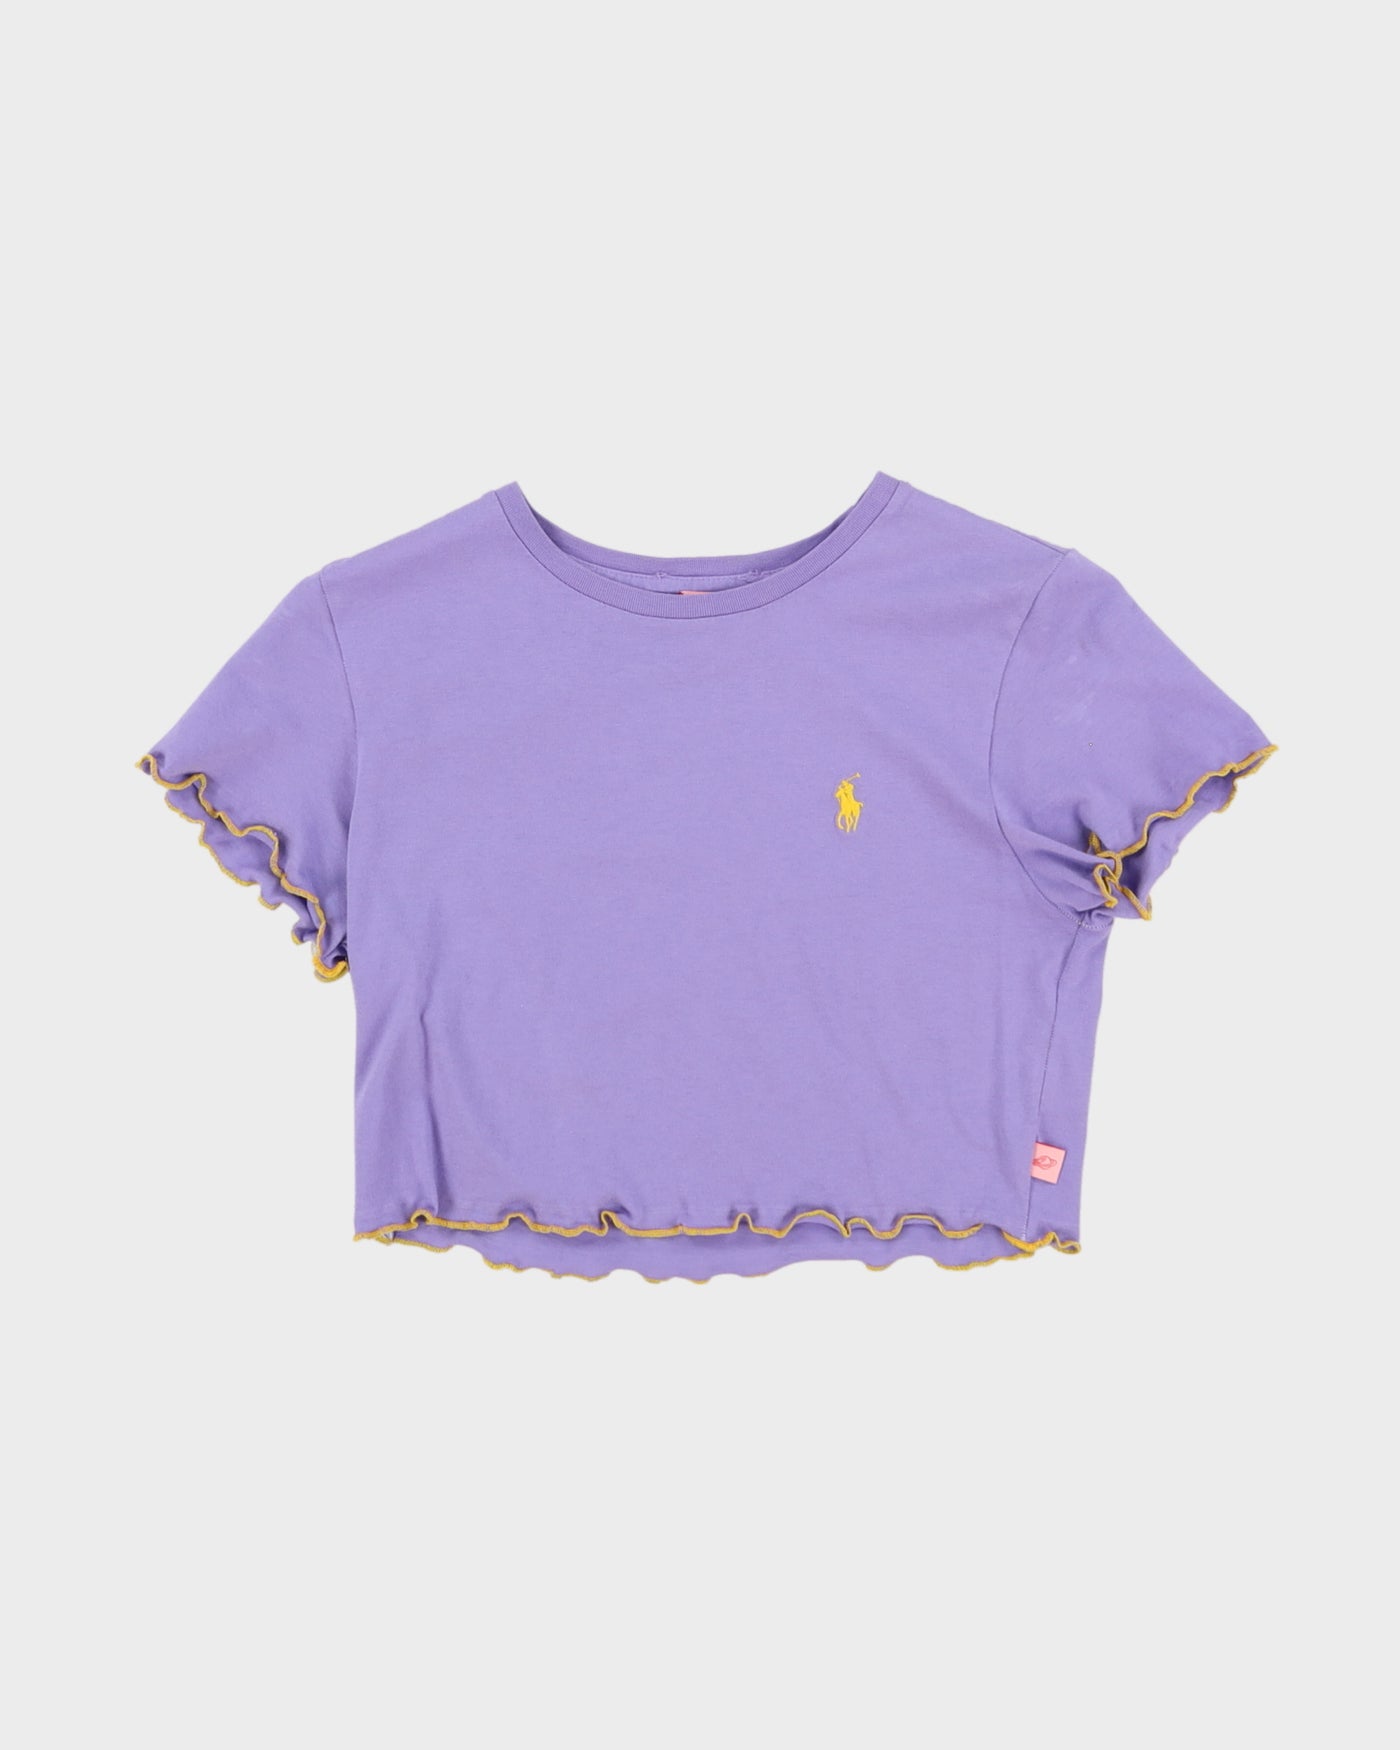 Rokit Originals Ralph Lauren Baby T Shirt - XS